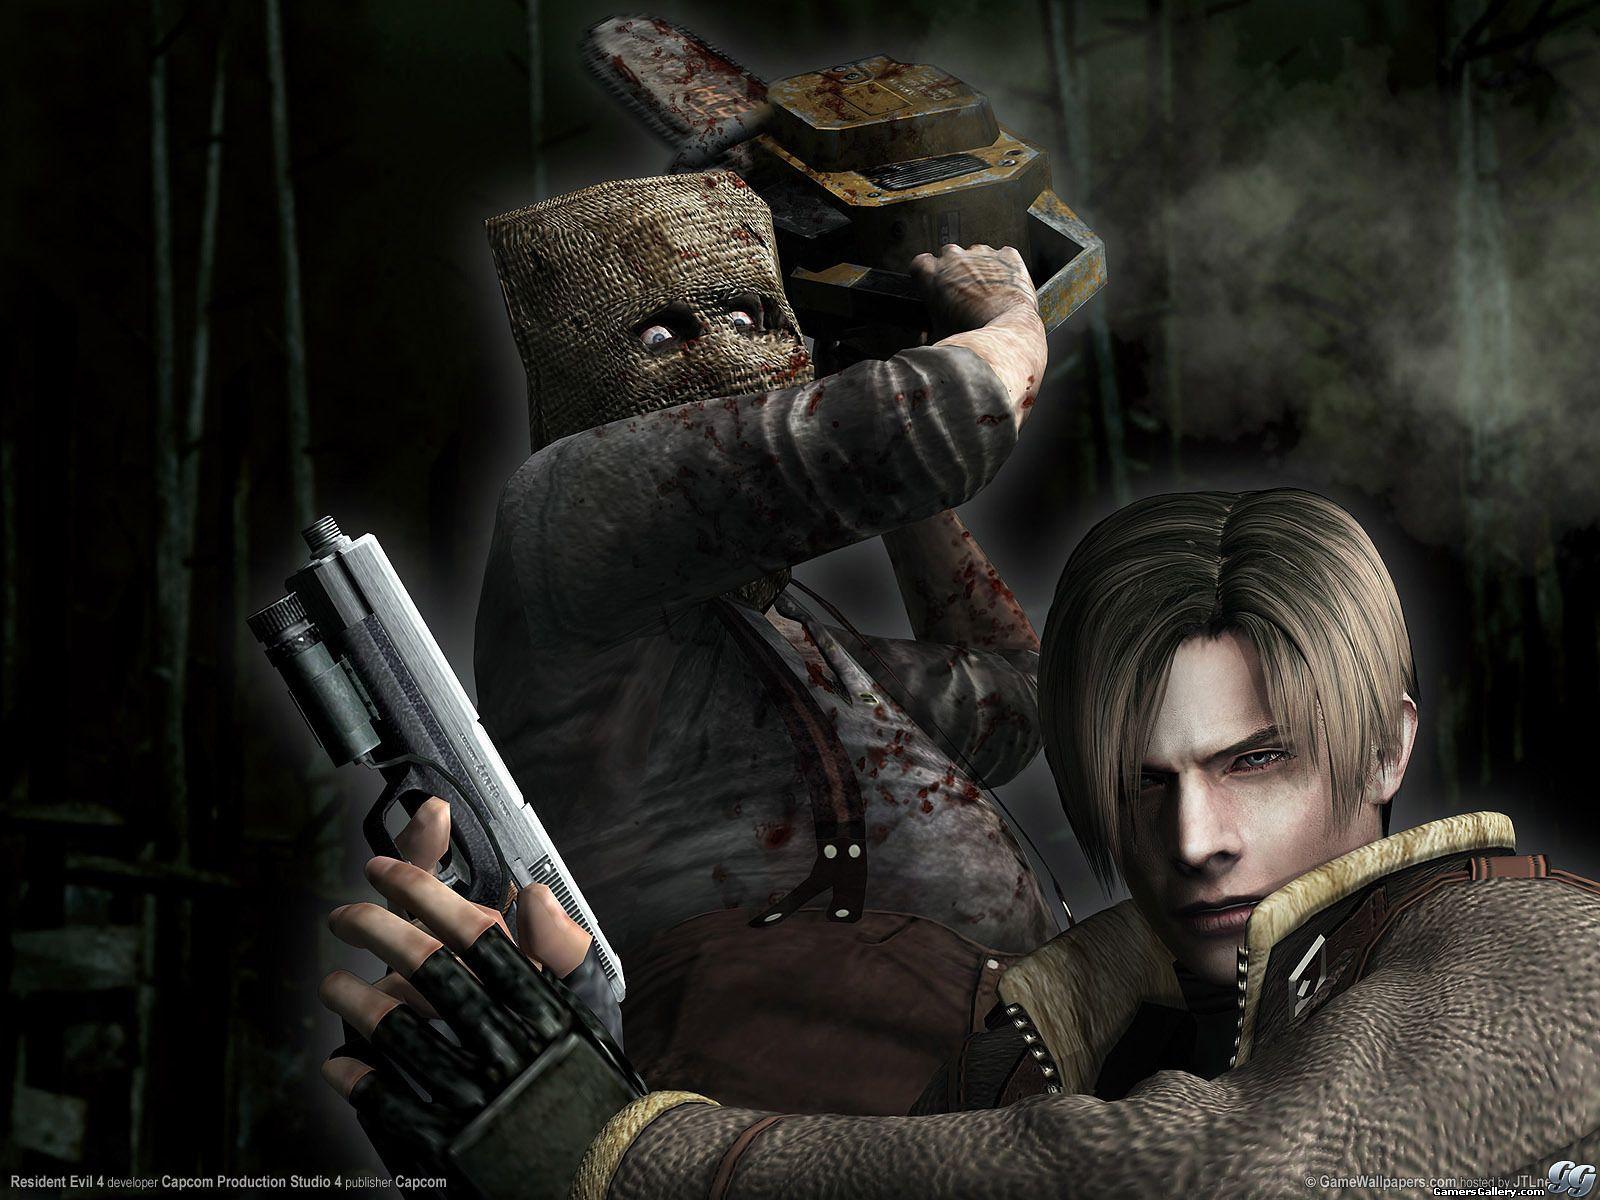 Resident Evil Wallpaper